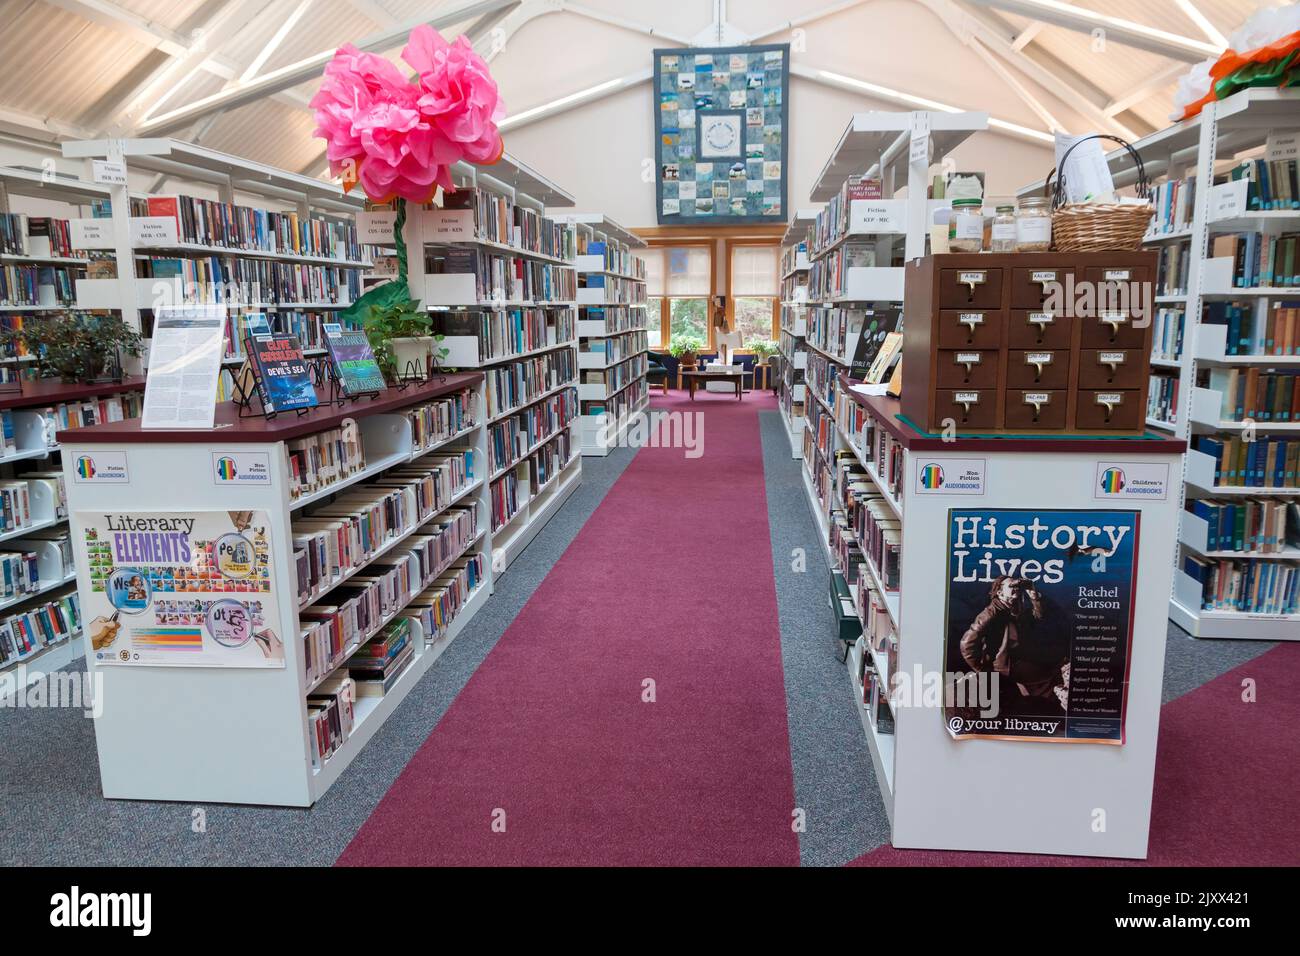 Librairies/piles dans la bibliothèque publique Truro, Truro, Massachusetts, Cape Cod, États-Unis. Banque D'Images